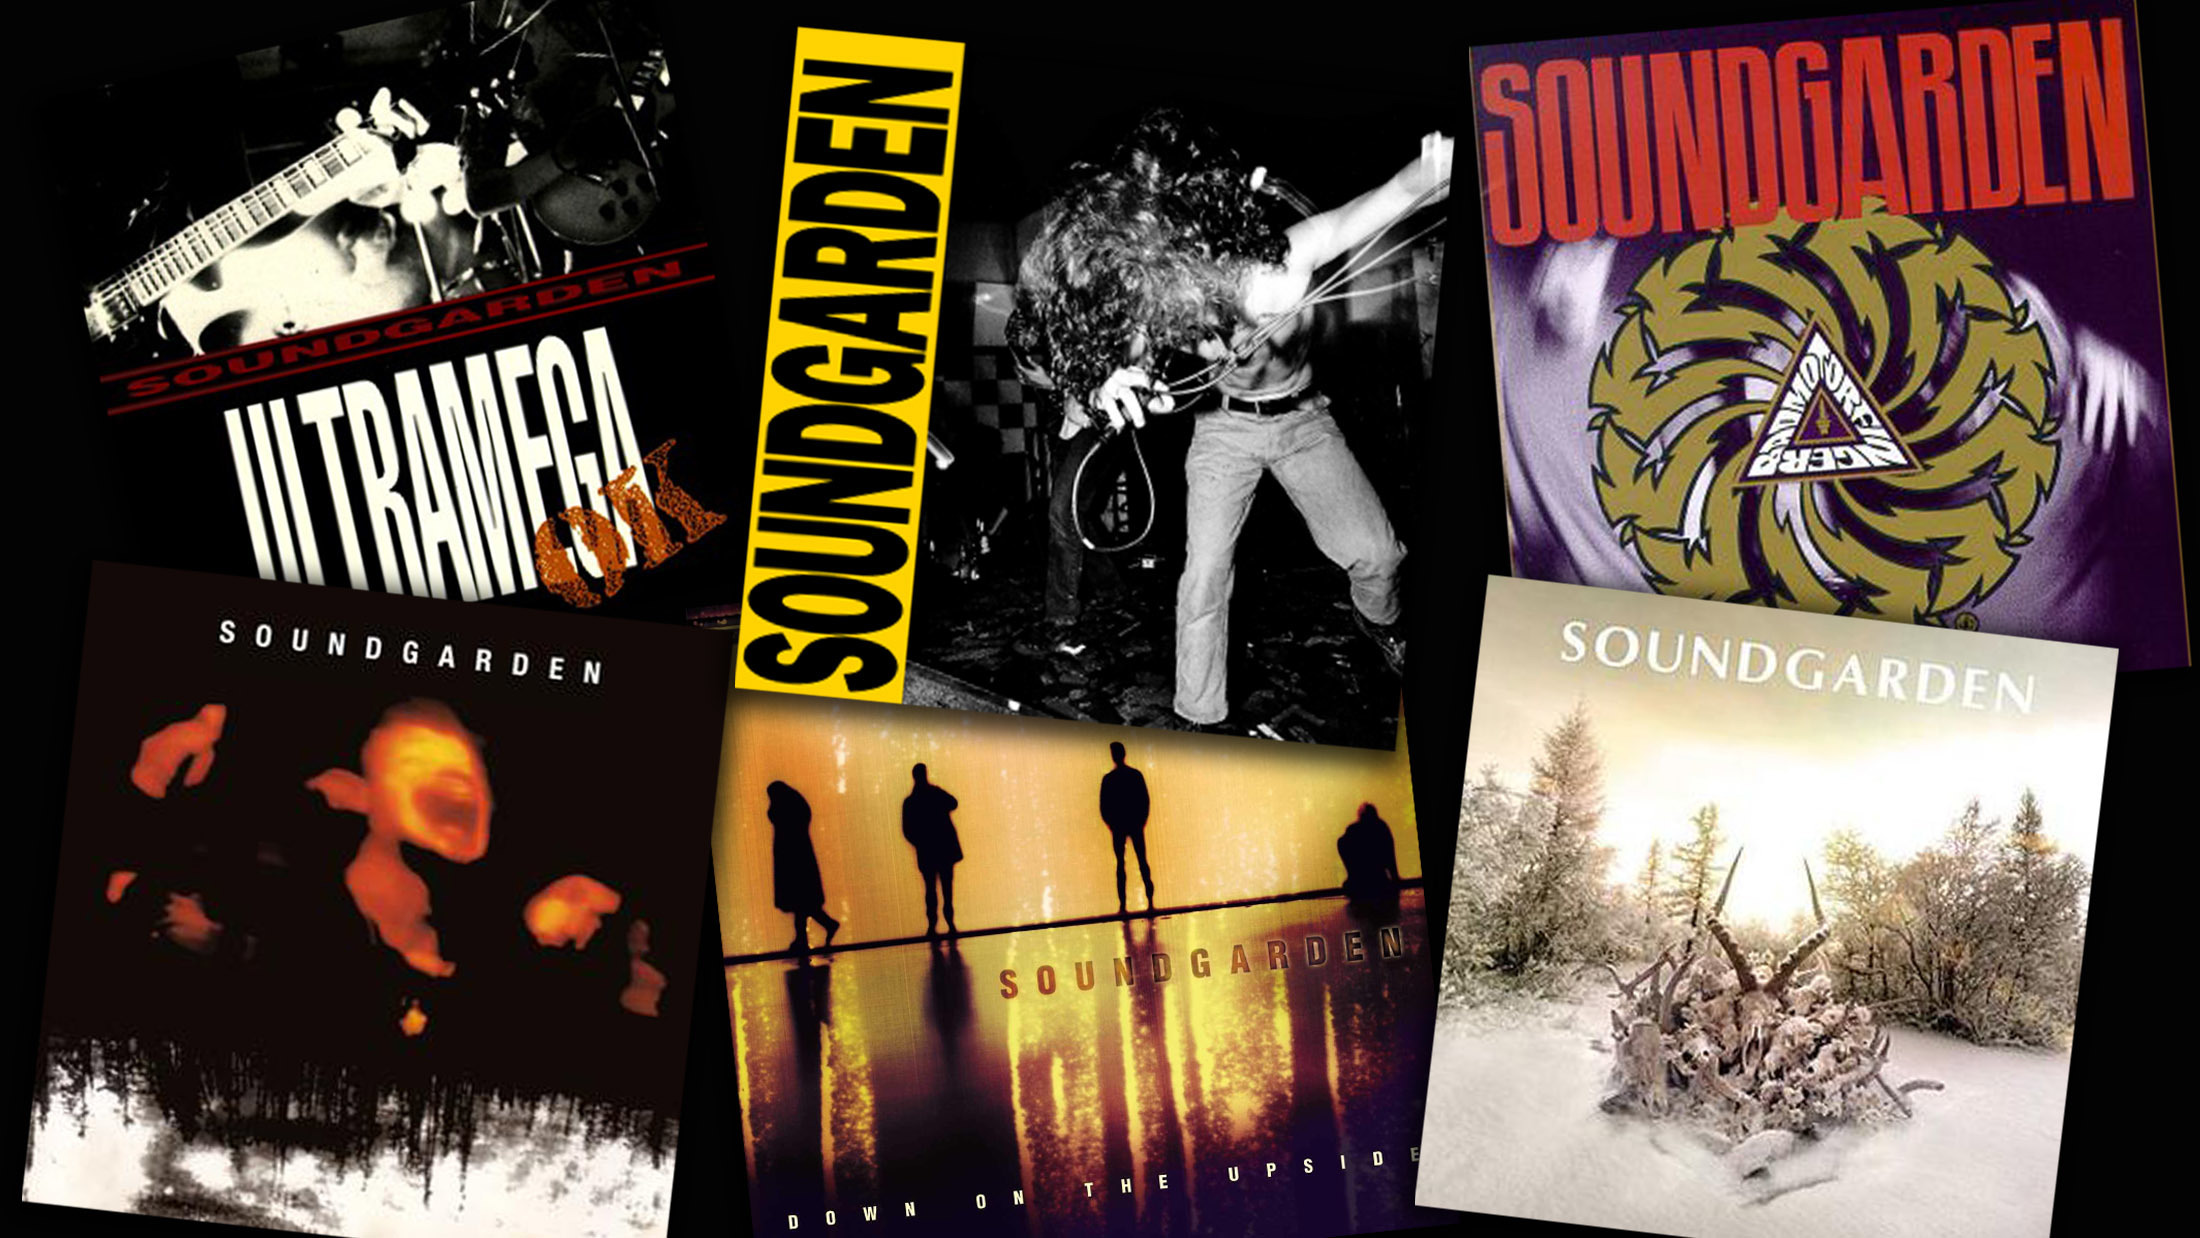 soundgarden badmotorfinger full album youtube